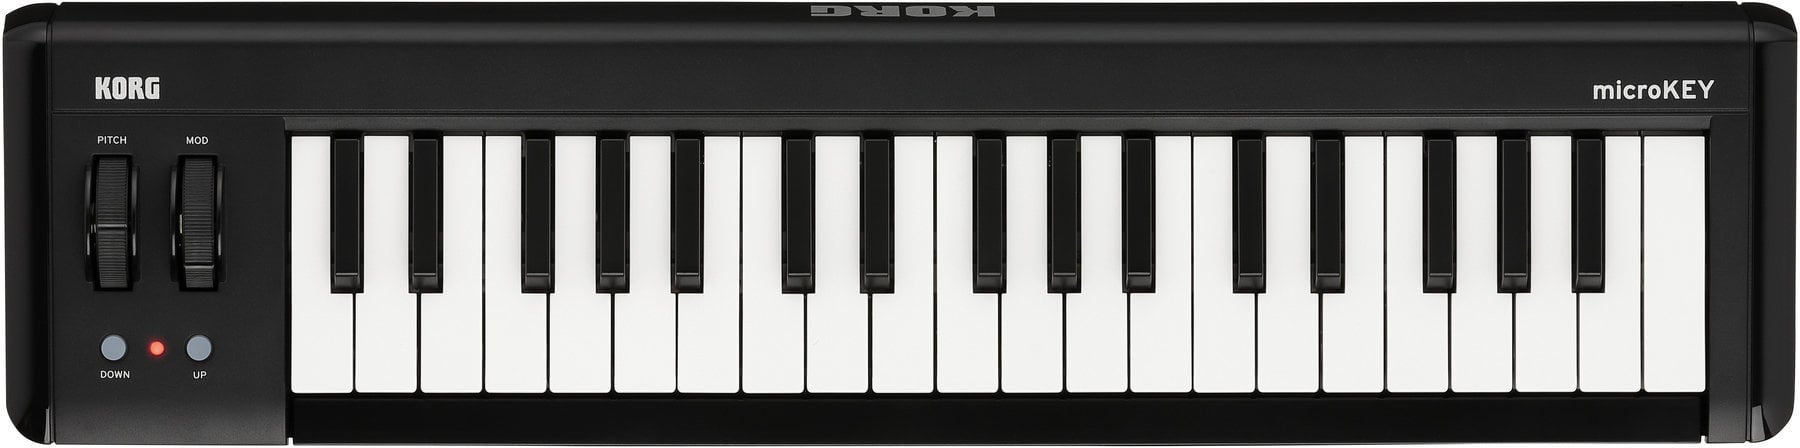 MIDI keyboard Korg MicroKEY Air 37